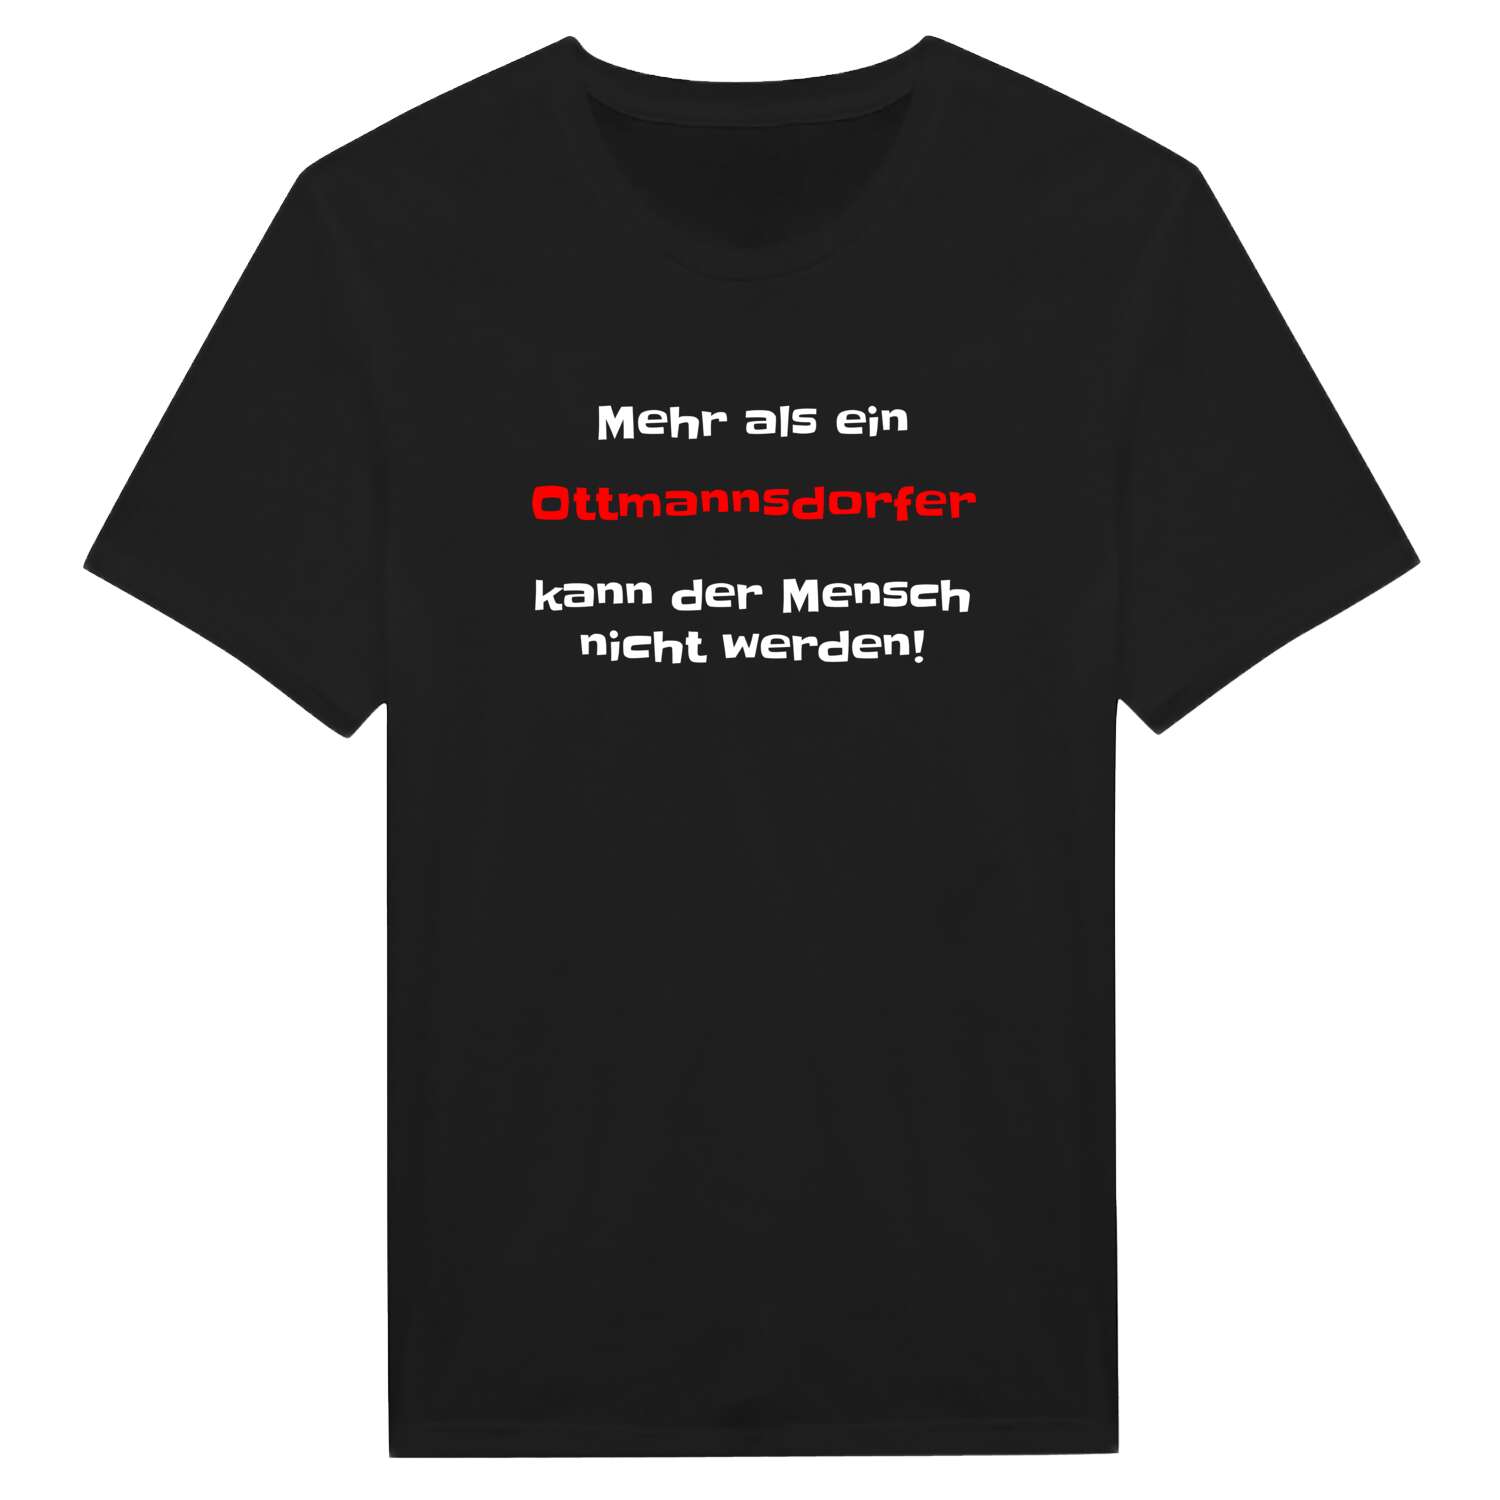 Ottmannsdorf T-Shirt »Mehr als ein«